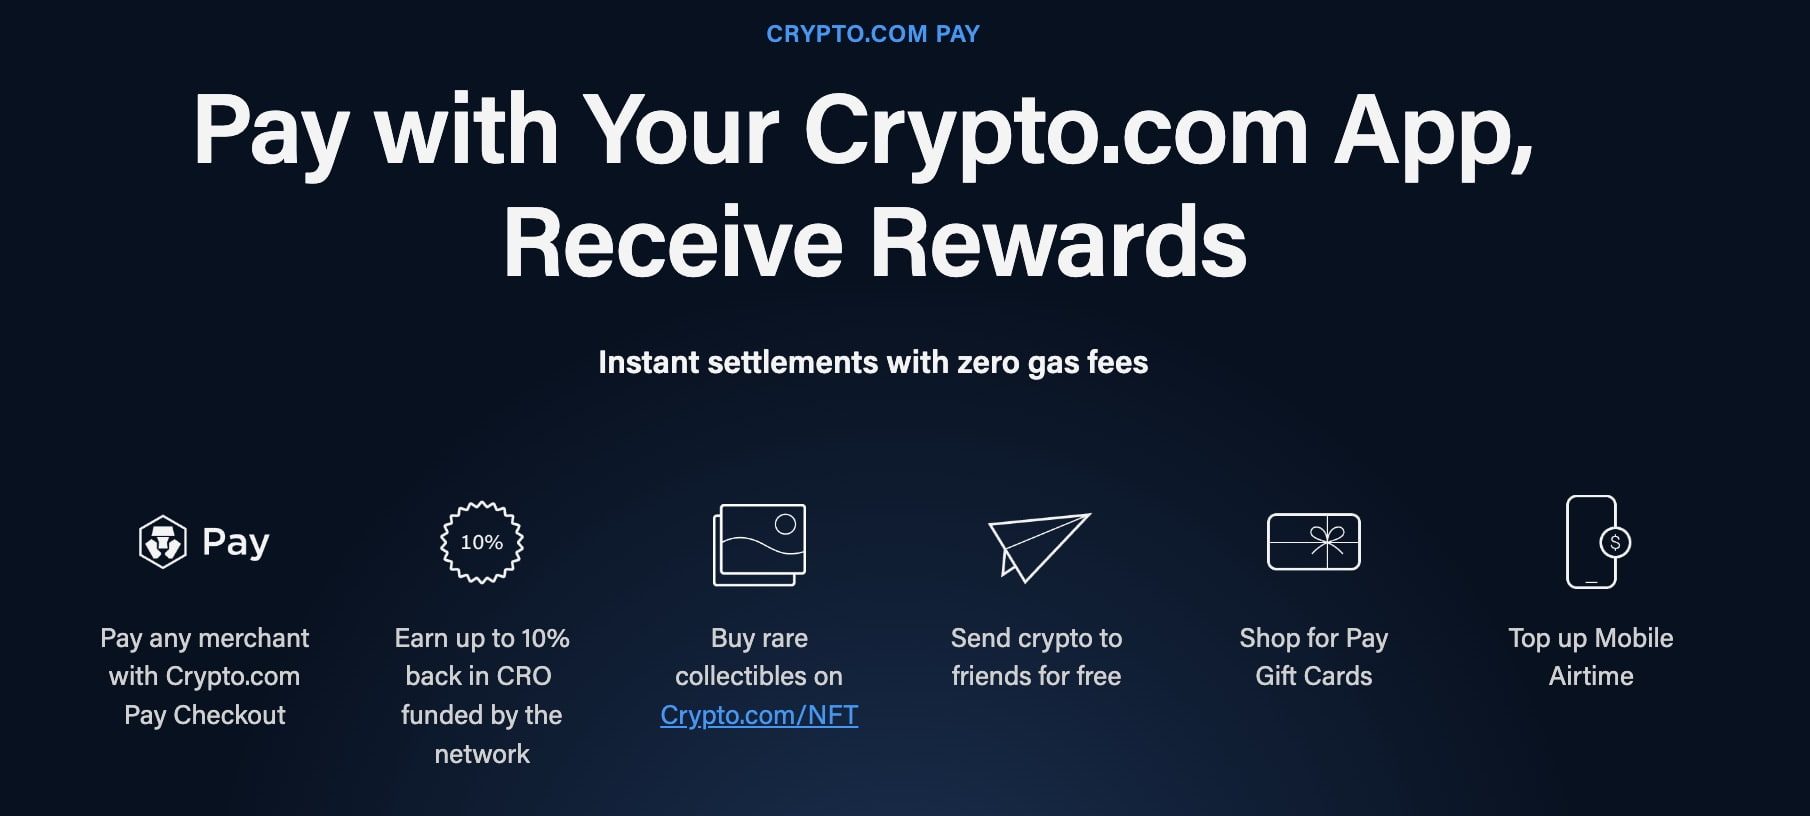 Crypto.com features